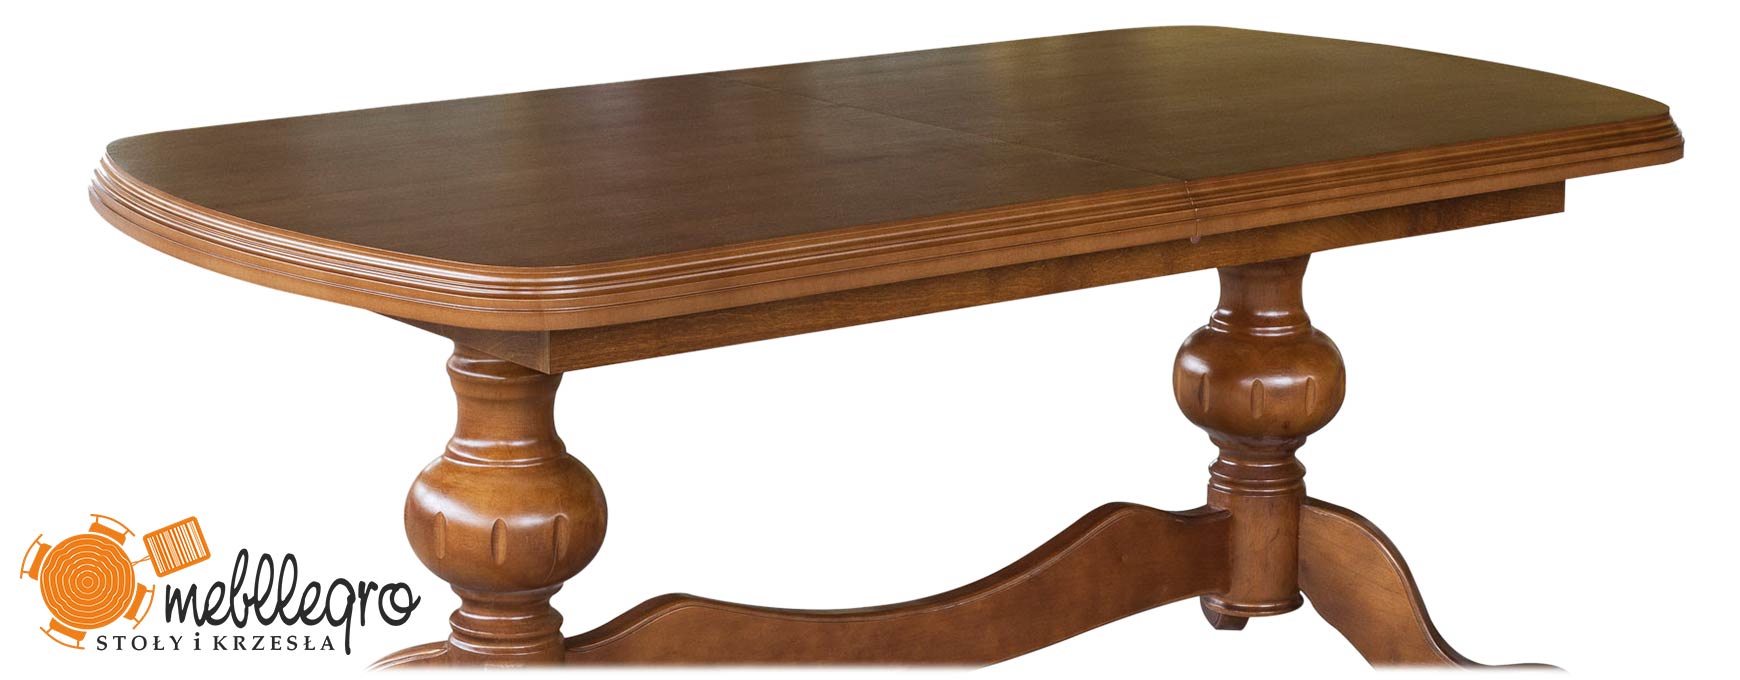 Ławo-stół rozkładany drewniany S49 toczone nogi